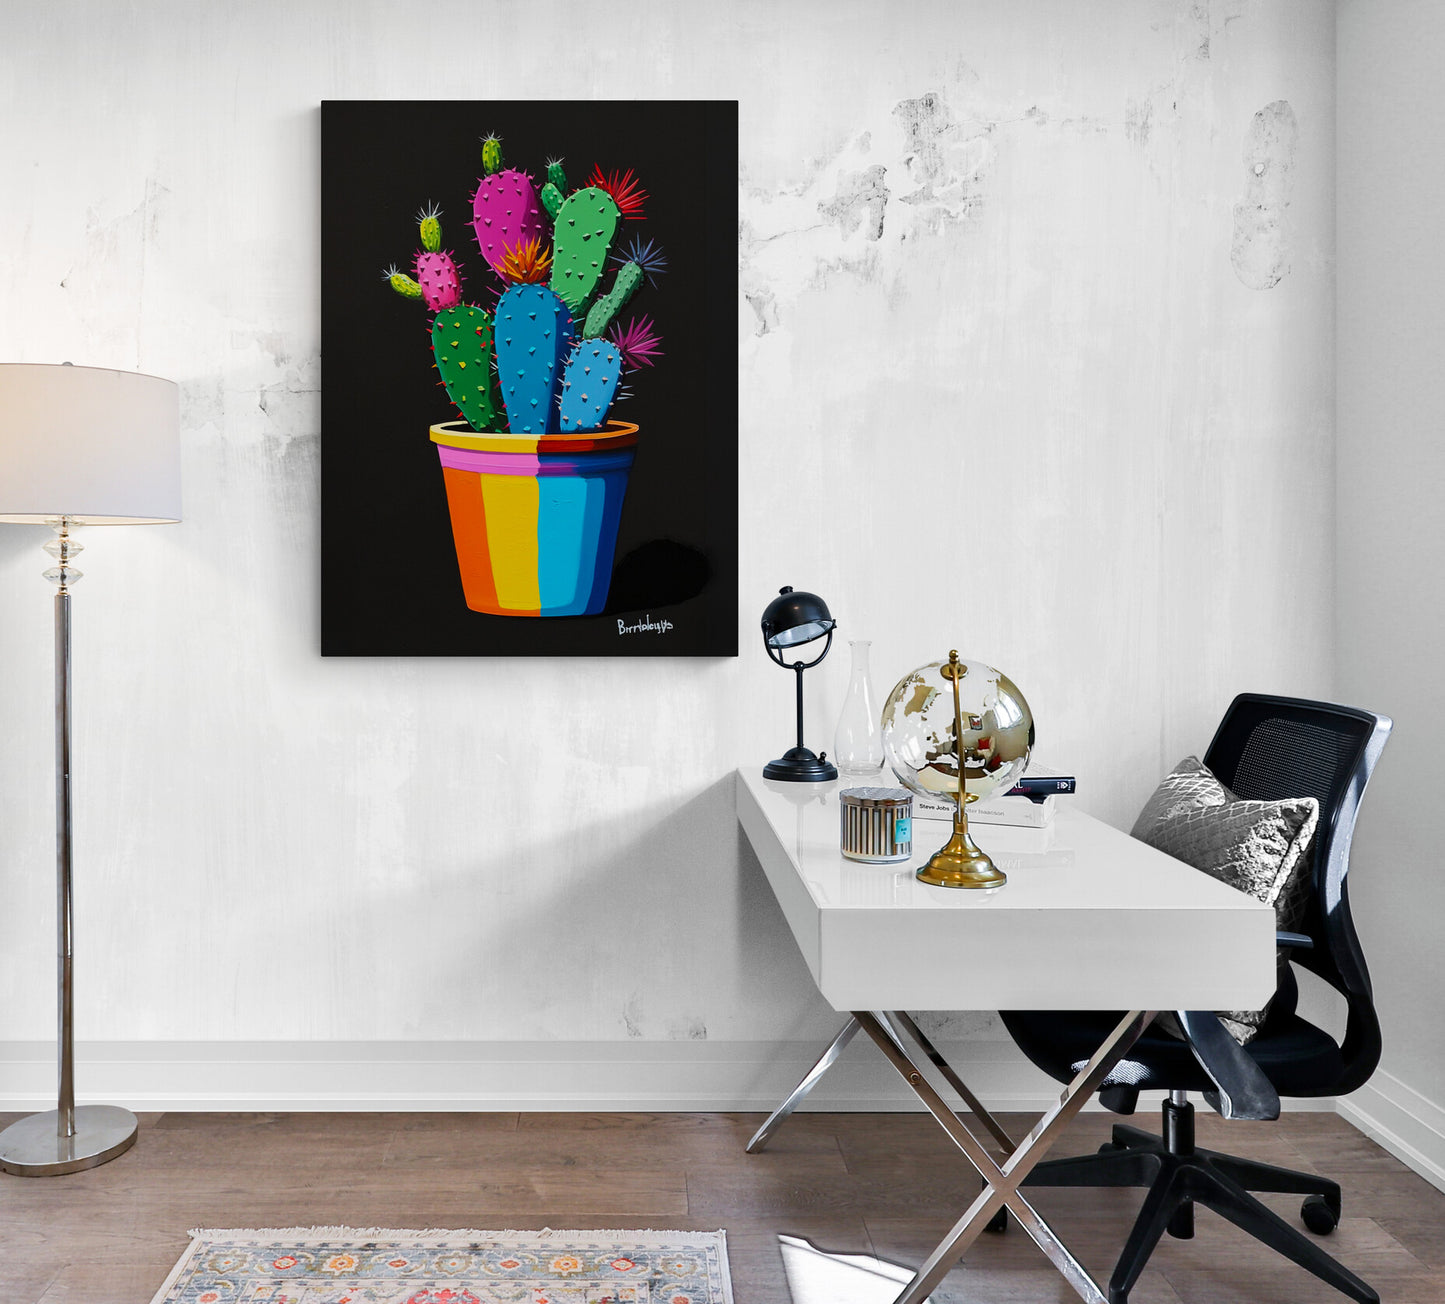 "Bureau design embelli par le tableau cactus, fusion parfaite de modernité et d'énergie créative